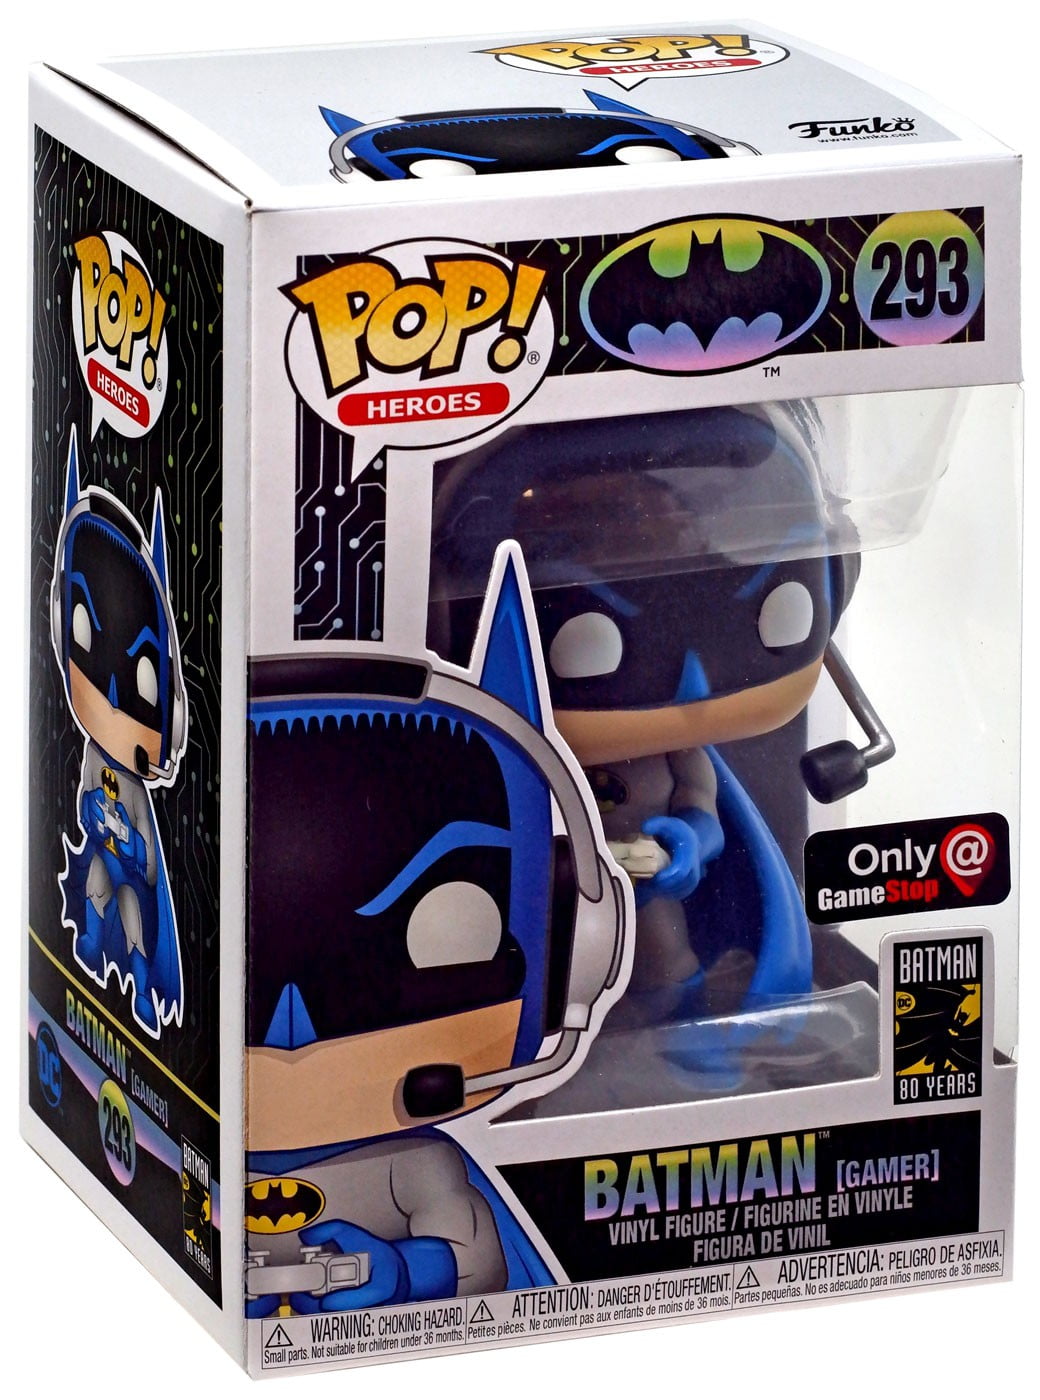 Pop Heroes Dc Comics Bombshells #258 Batman Exclusive Vinyl Figur 